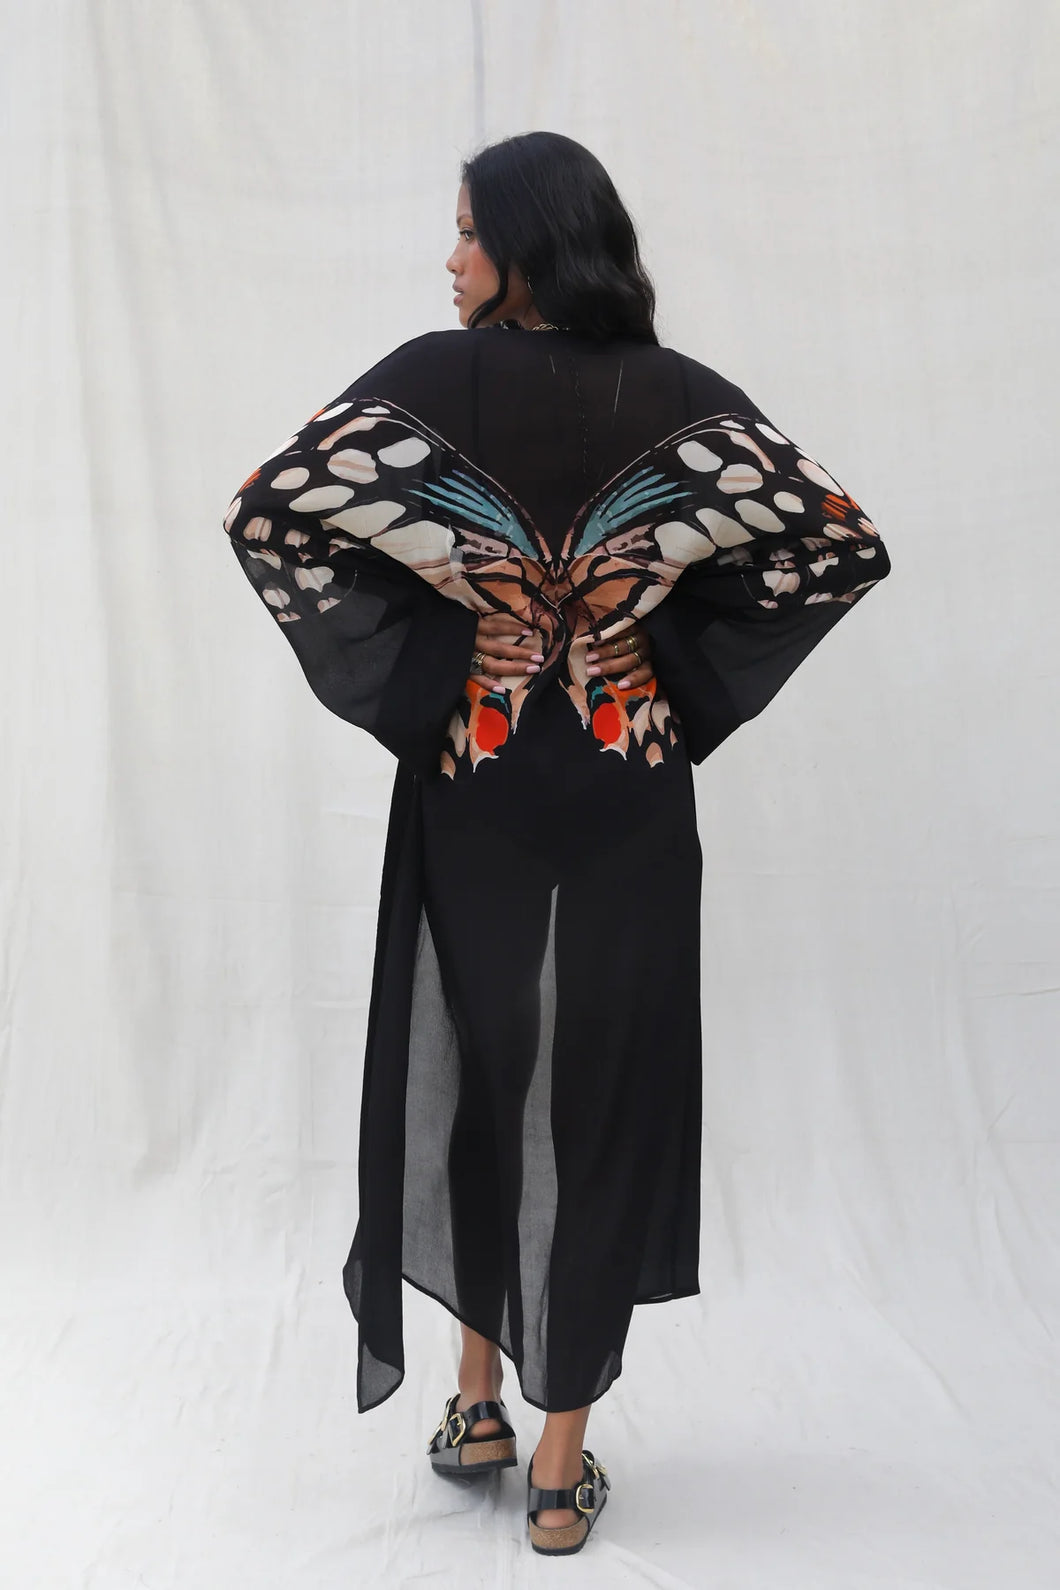 Silk Road Kimono- Metamorphosis